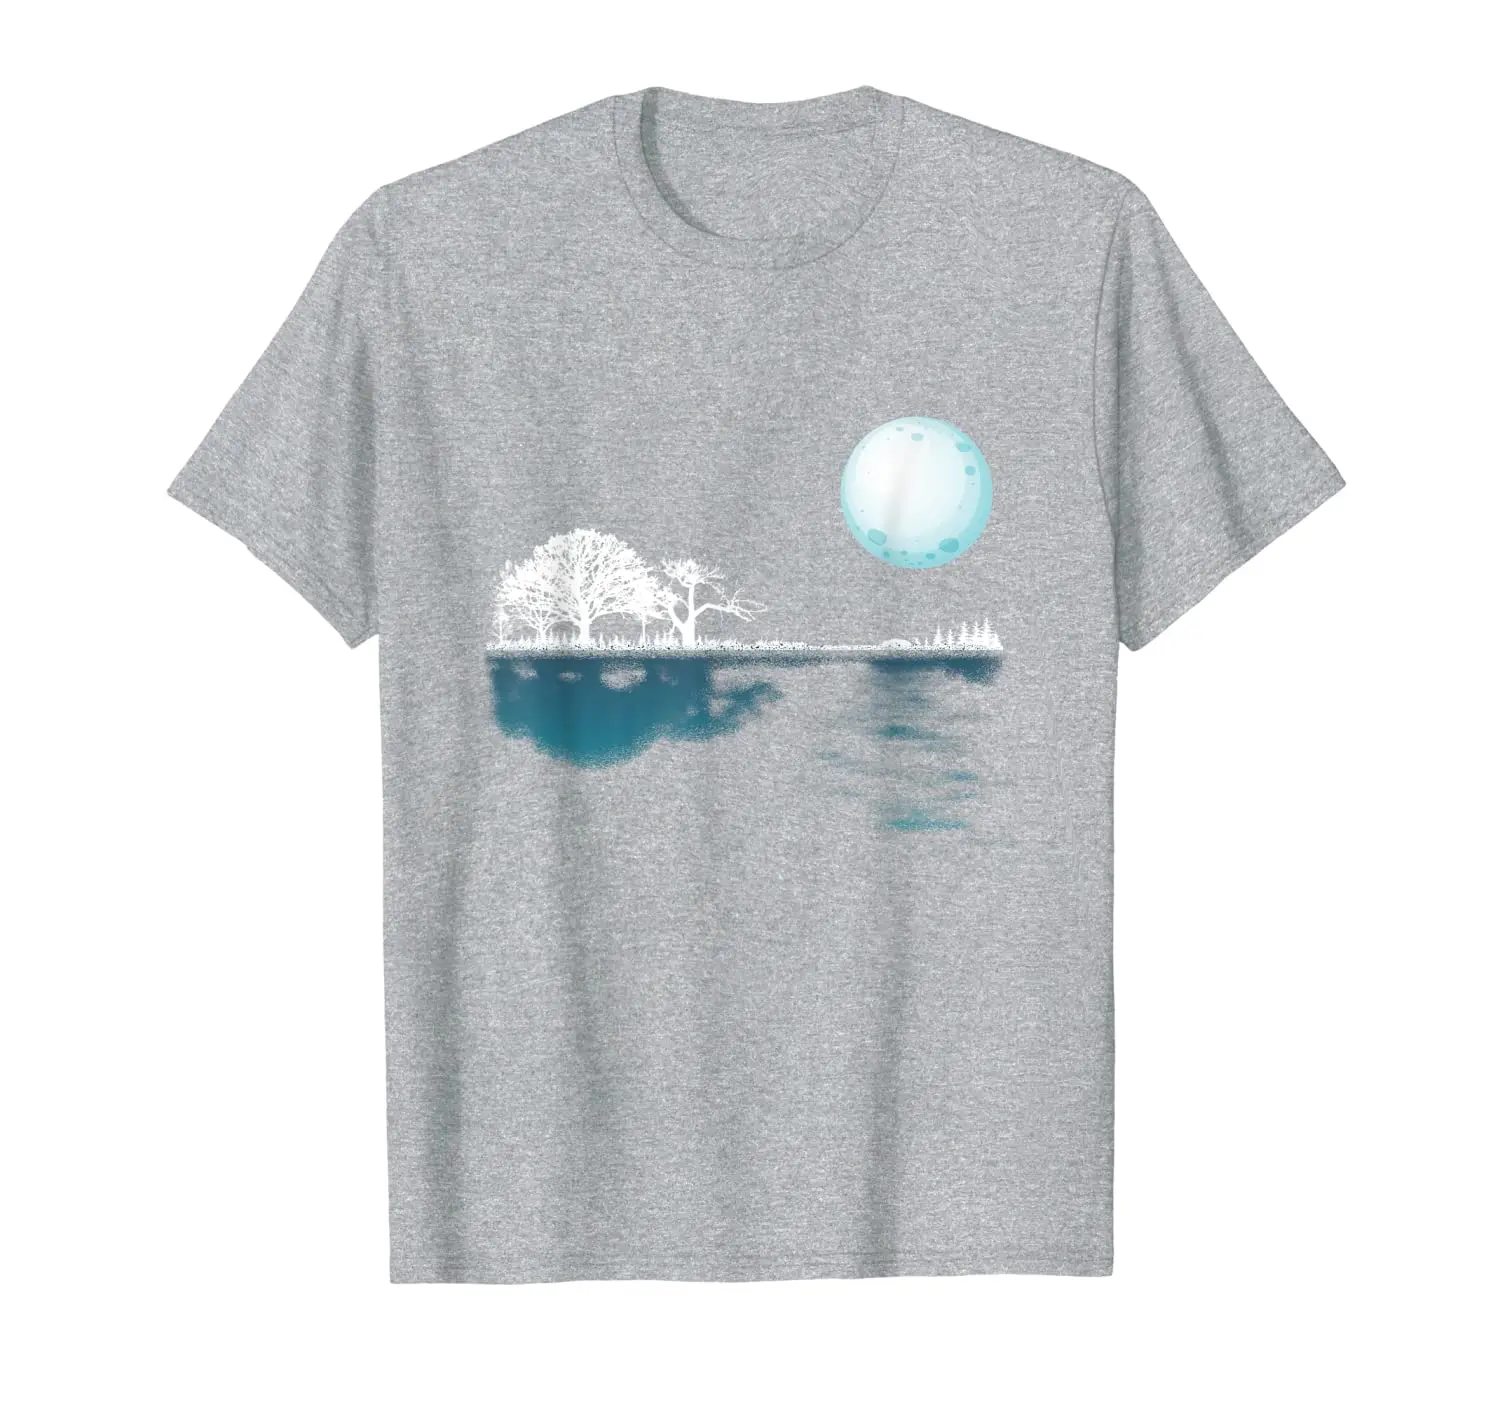 

Гитара озеро тень рубашка-музыкальный любовник музыкант подарок футболка